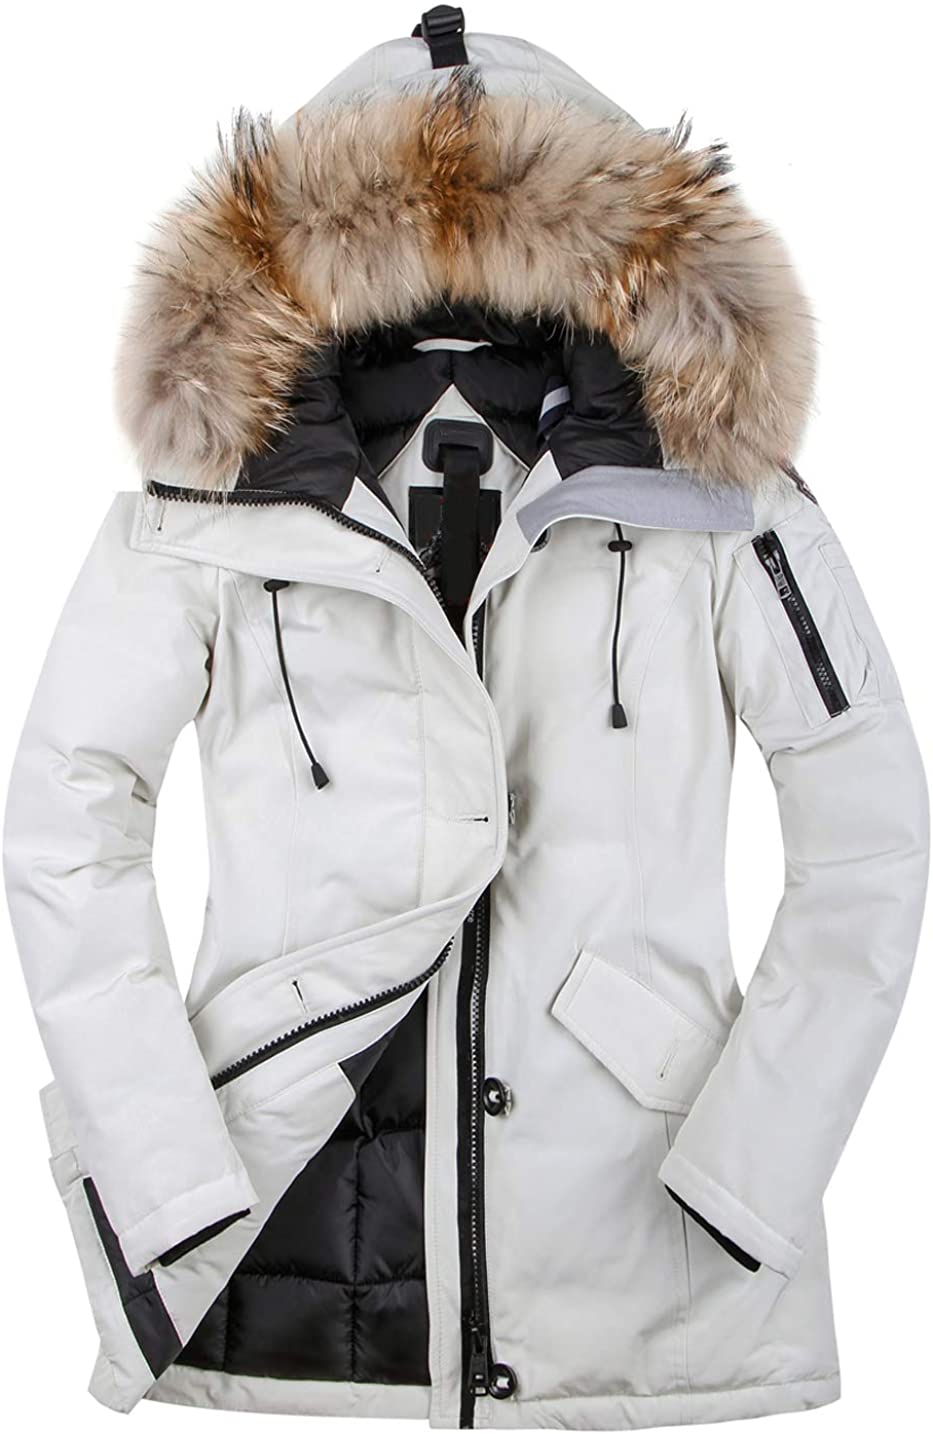 HSW Jackets for Women Ski Jacket Women Winter Snow Coats for Women Black Waterproof